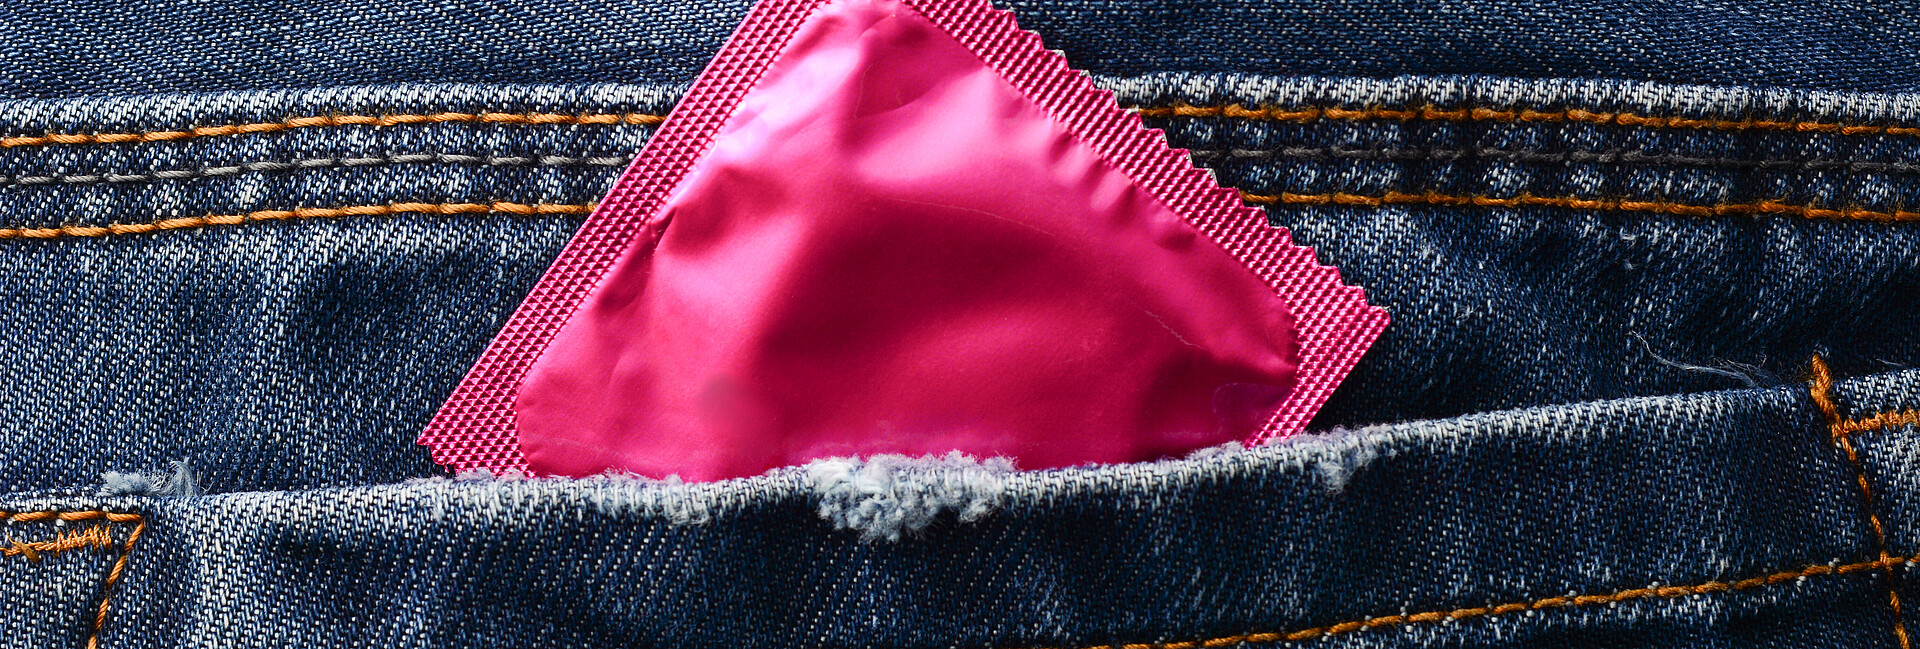 Rosafarbene Kondompackung in einer Hosentasche